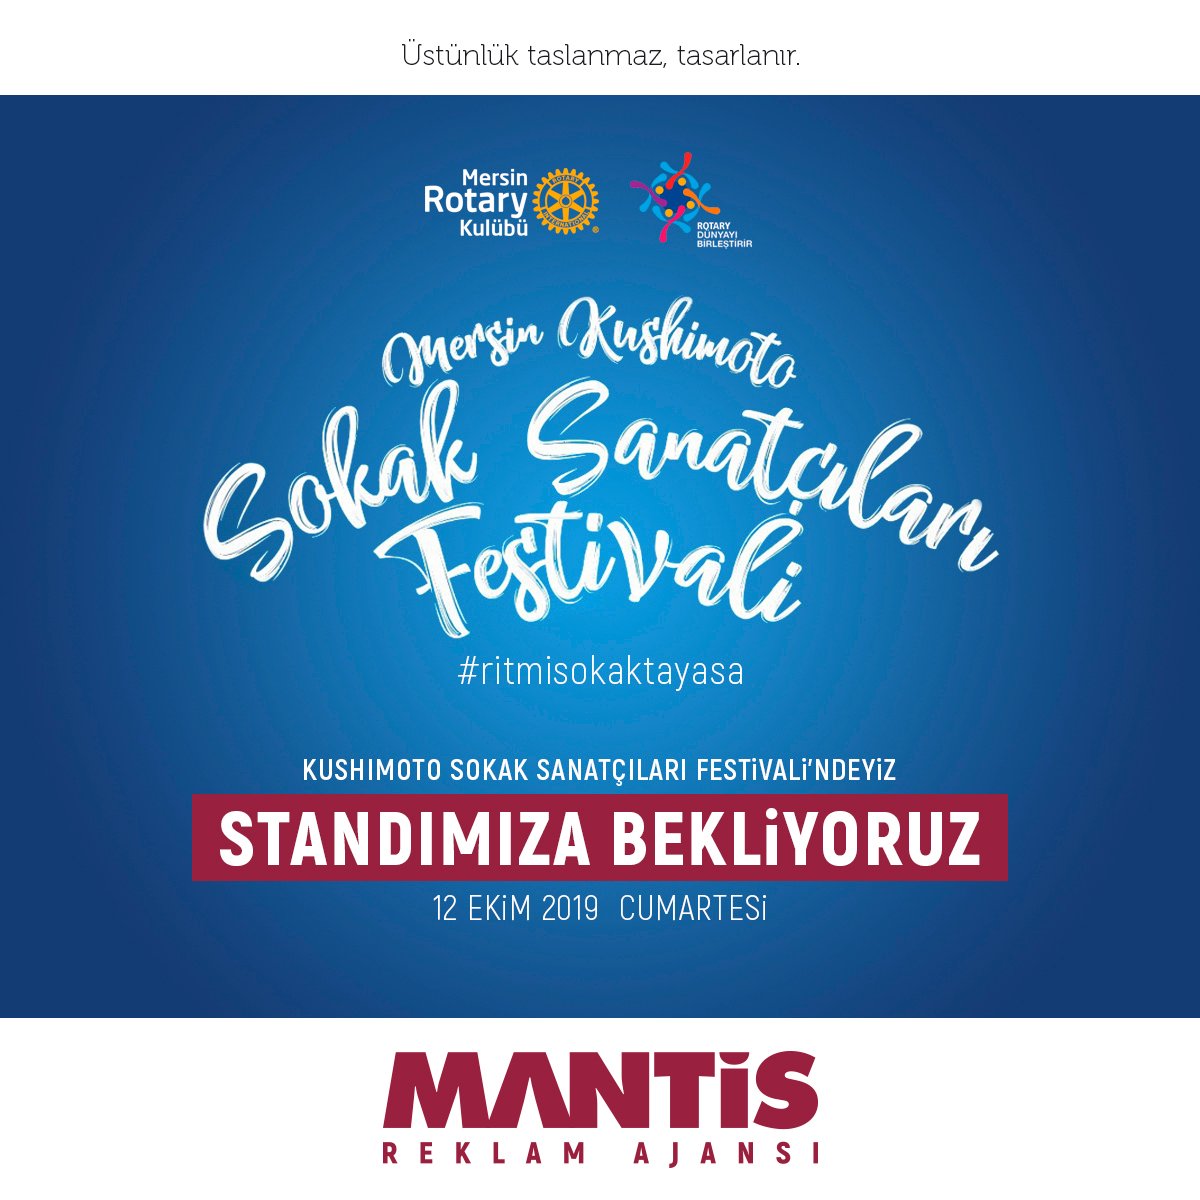 12 Ekim 2019 Cumartesi 'Mersin Kushimoto Sokak Sanatçıları Festivali'ndeyiz. Standımıza bekliyoruz...

#mantisreklamajansı #reklam #ajans #tasarım #advertising #design #mersin #adana #antalya #ritmisokaktayasa #kushimoto #sanat #art #festival #12ekim #12october #Turkey